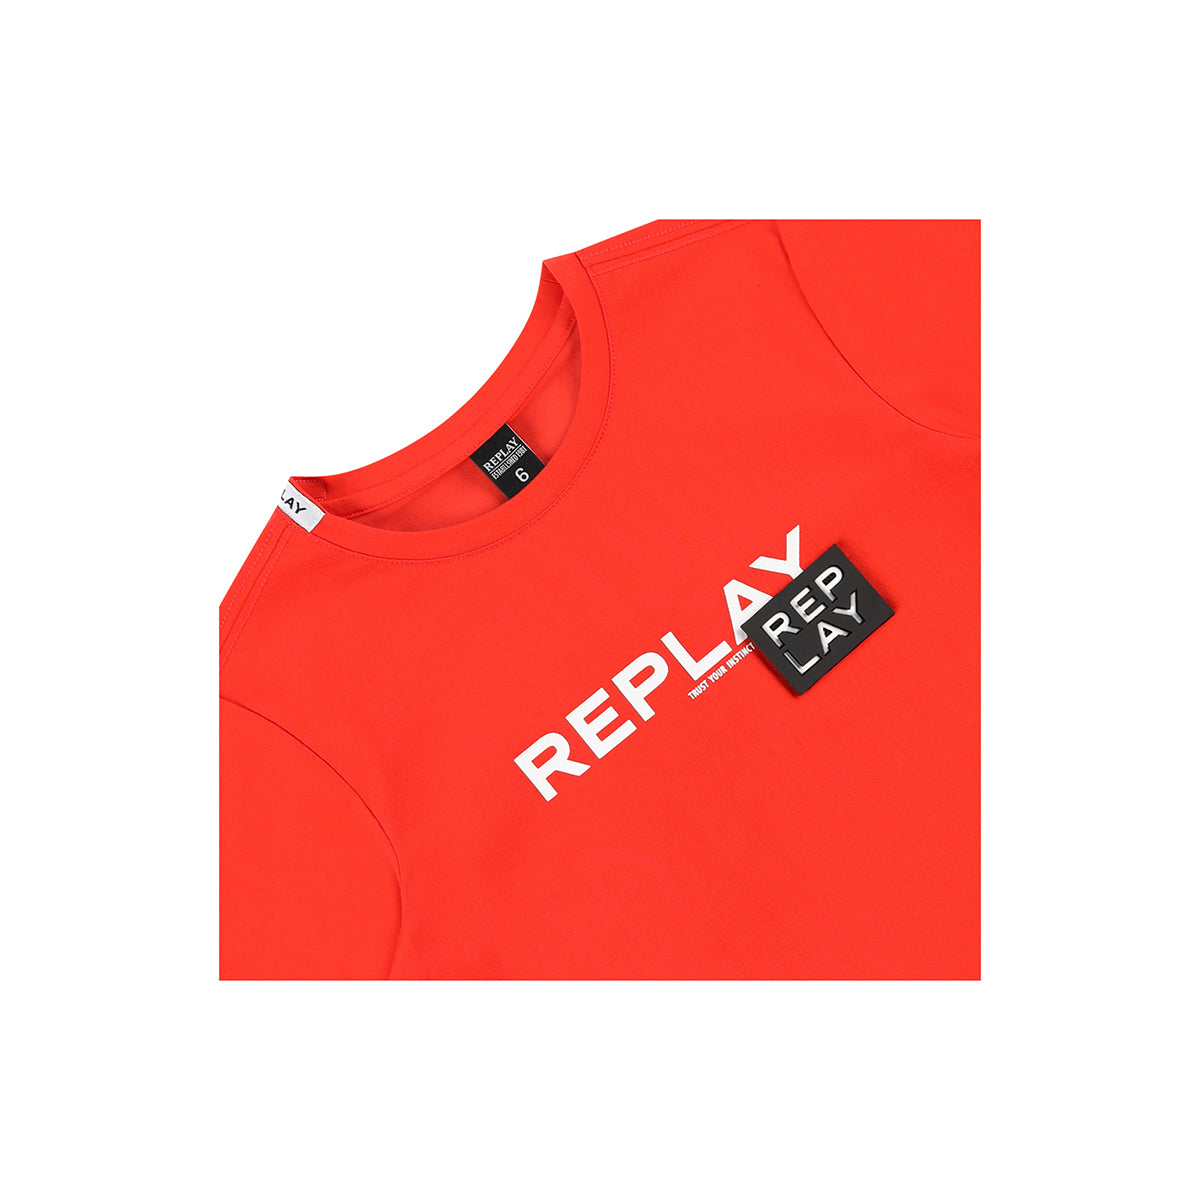 חולצה REPLAY לוגו מותג לילדים